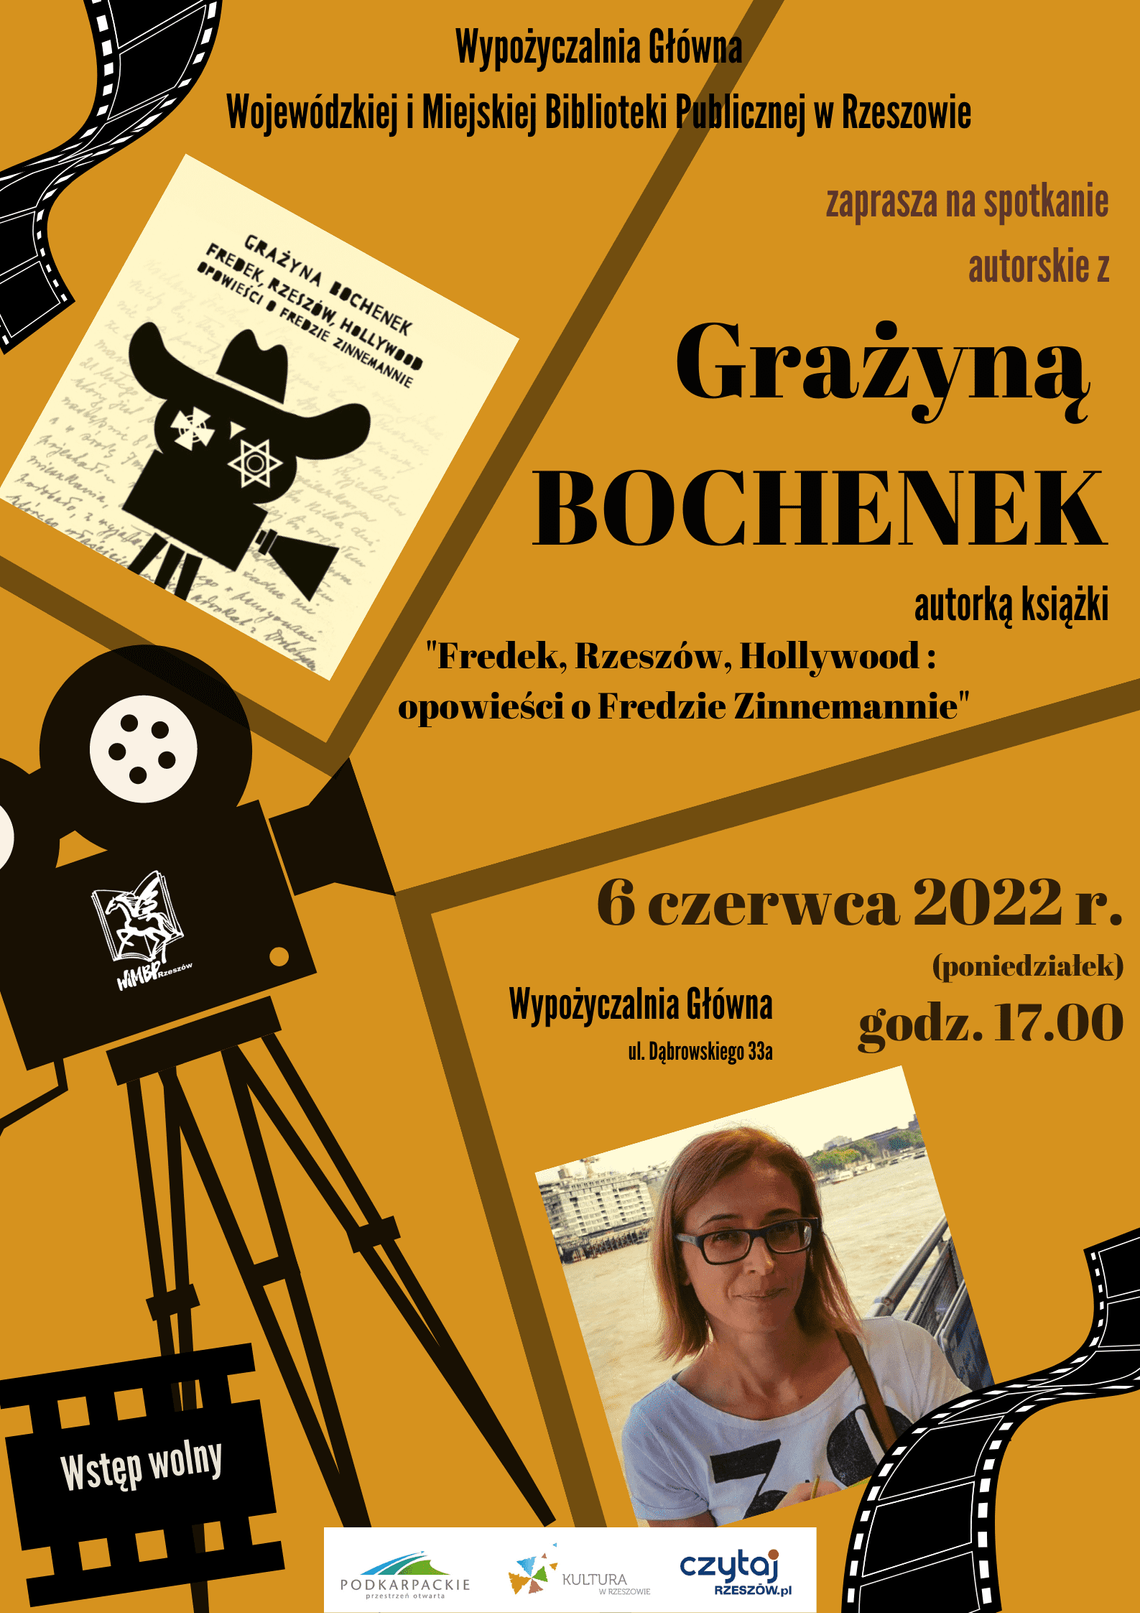 Spotkanie autorskie z Grażyną Bochenek i rozmowa wokół książki "Fredek, Rzeszów, Hollywood. Opowieści o Fredzie Zinnemannie"